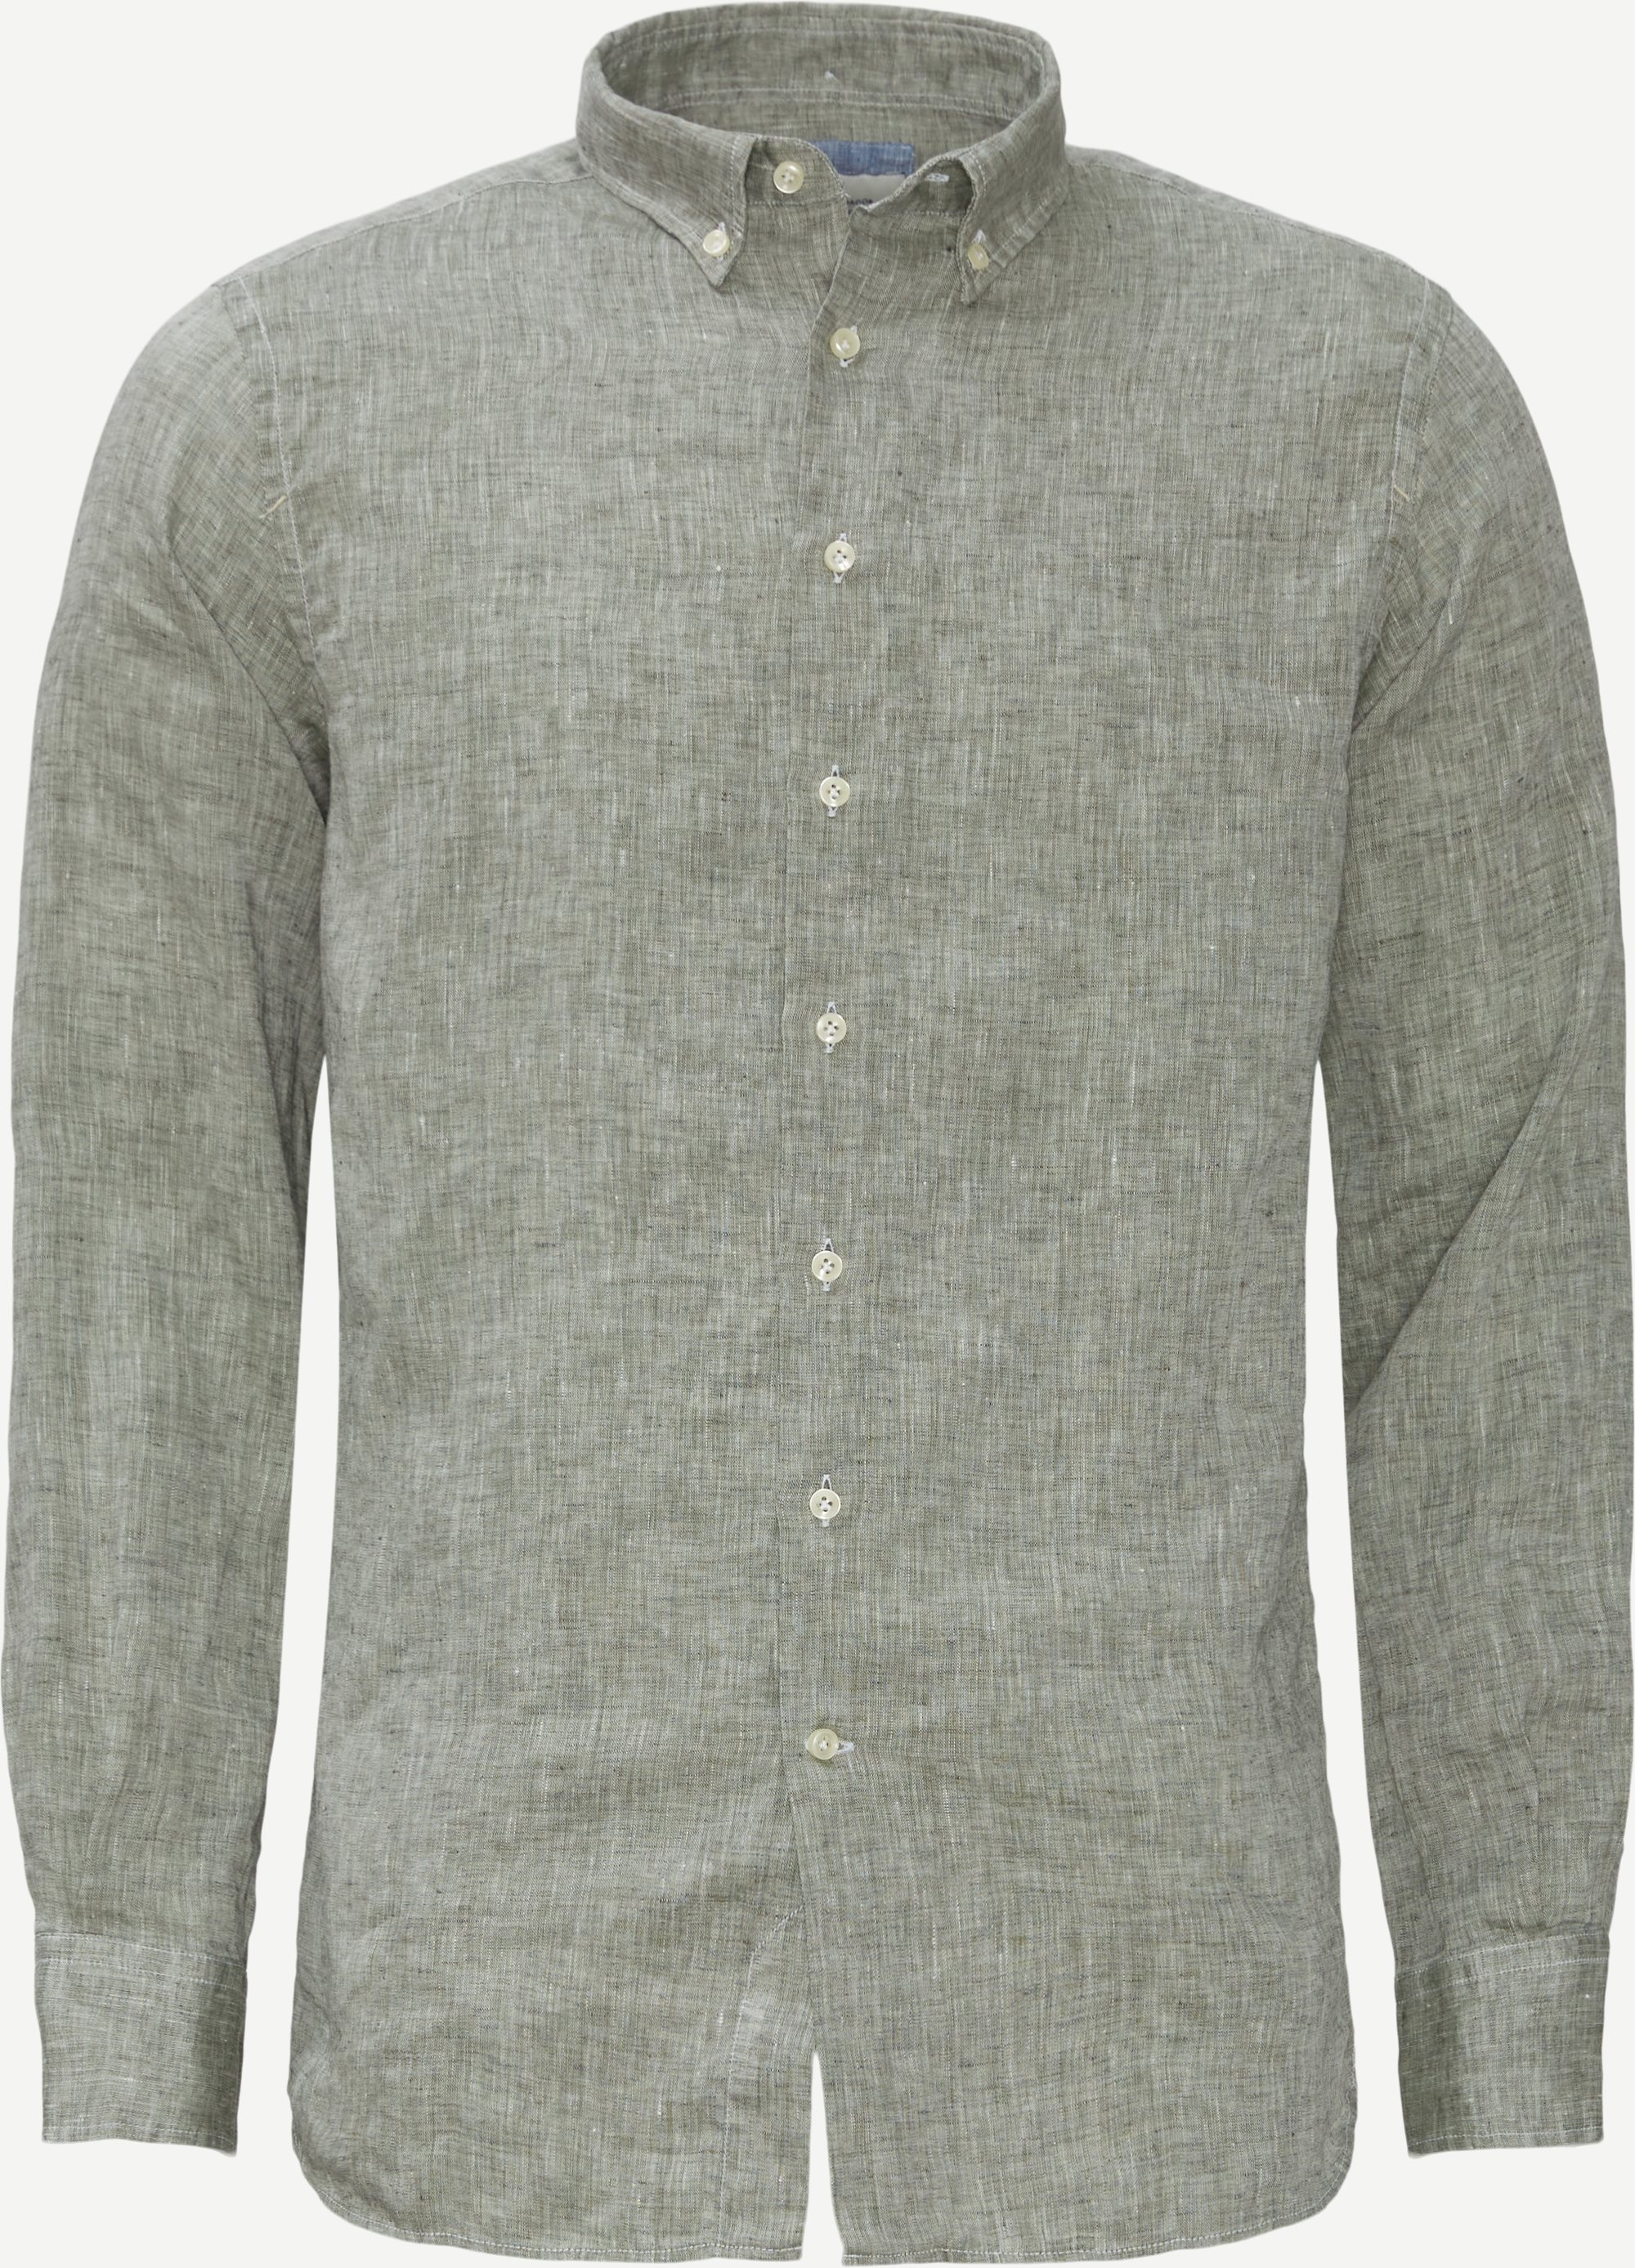 11100 Washed Linen Shirt - Skjorter - Regular fit - Grøn